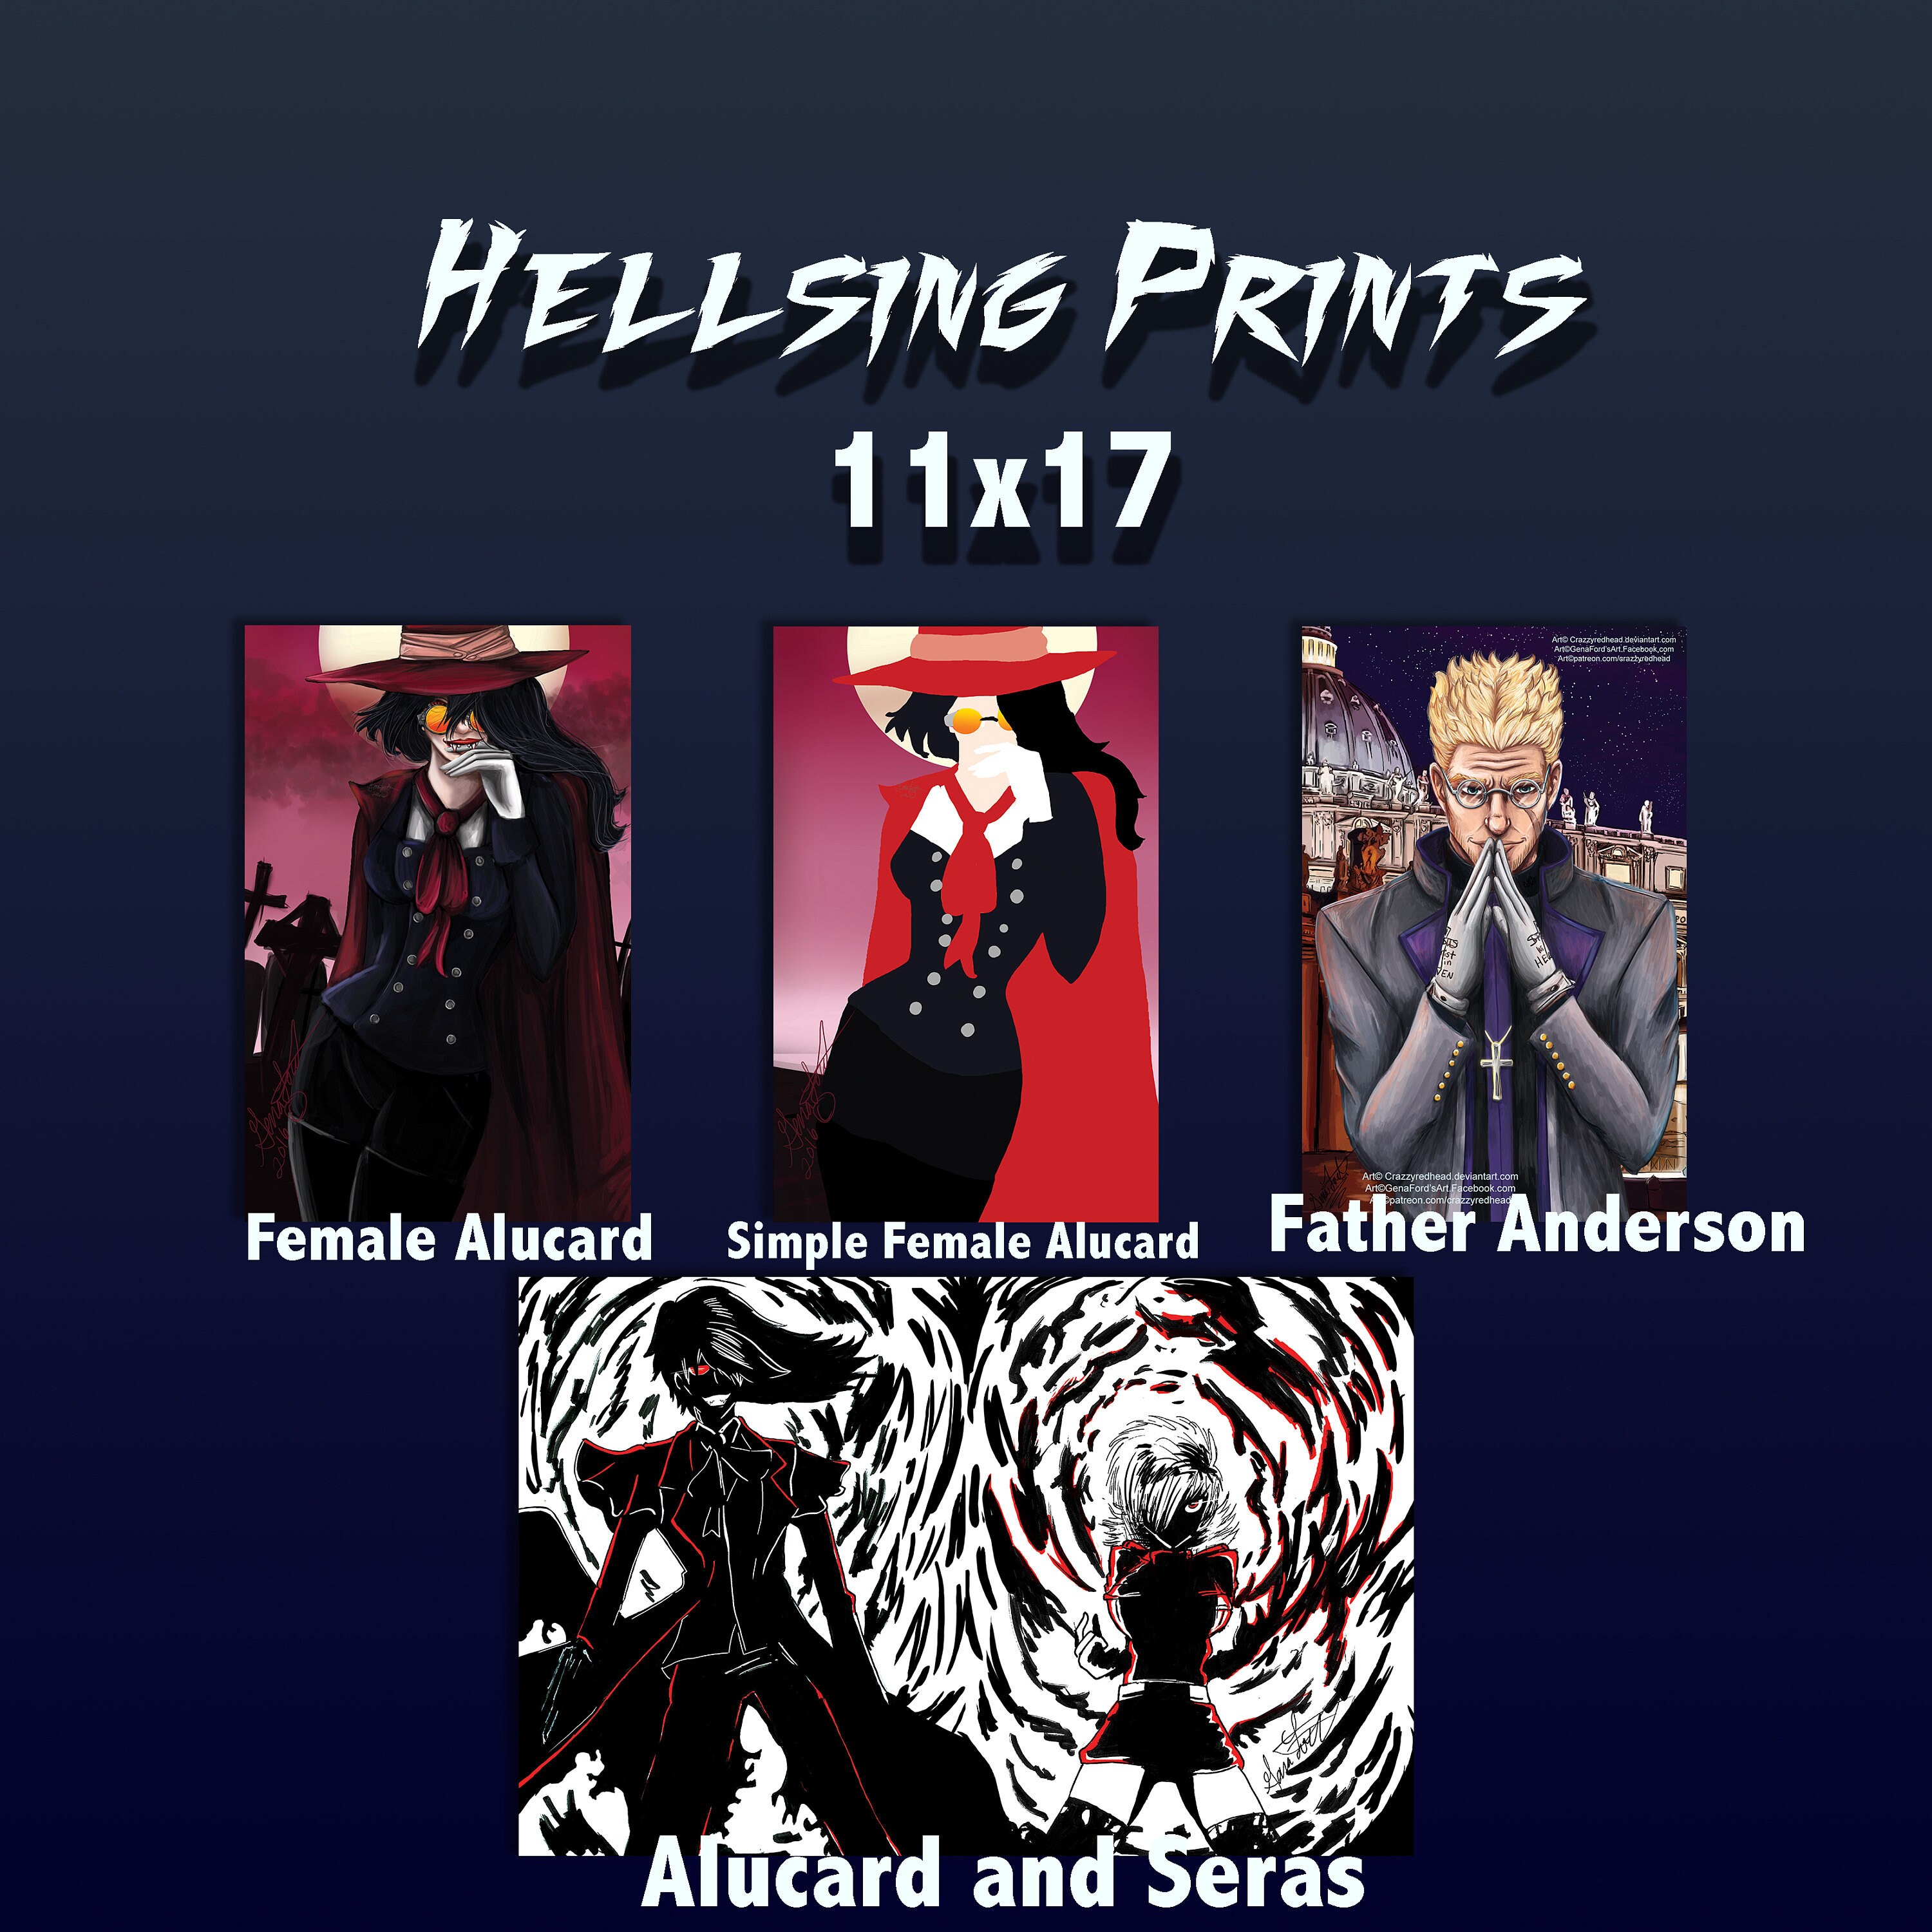 Hellsing Posters Online - Shop Unique Metal Prints, Pictures, Paintings